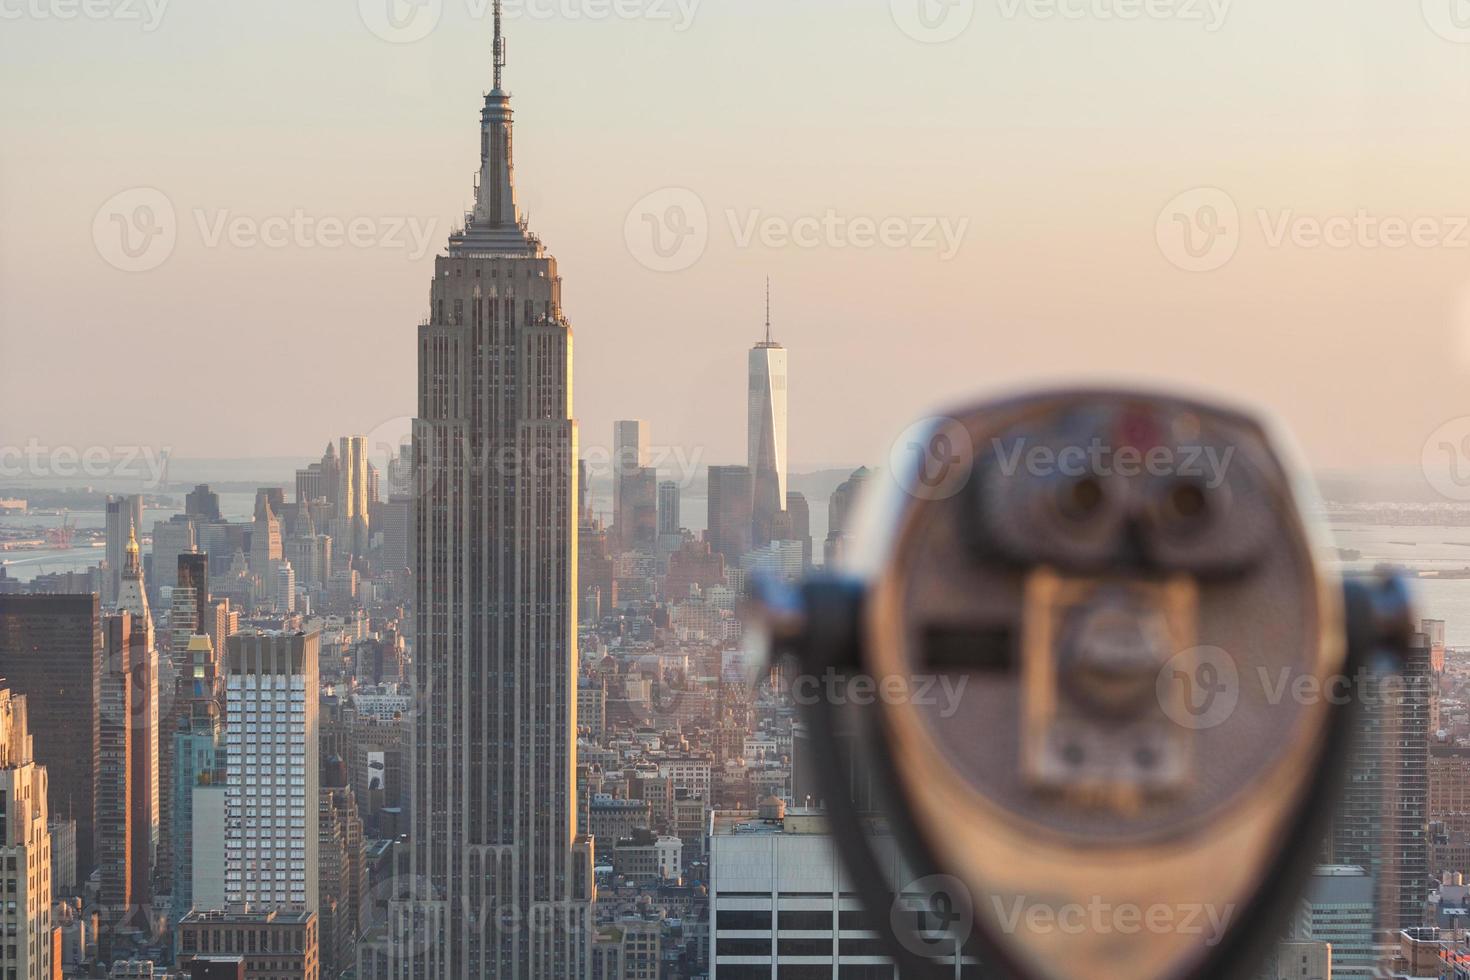 binóculo com arranha-céus de Nova York em fundo ao pôr do sol foto